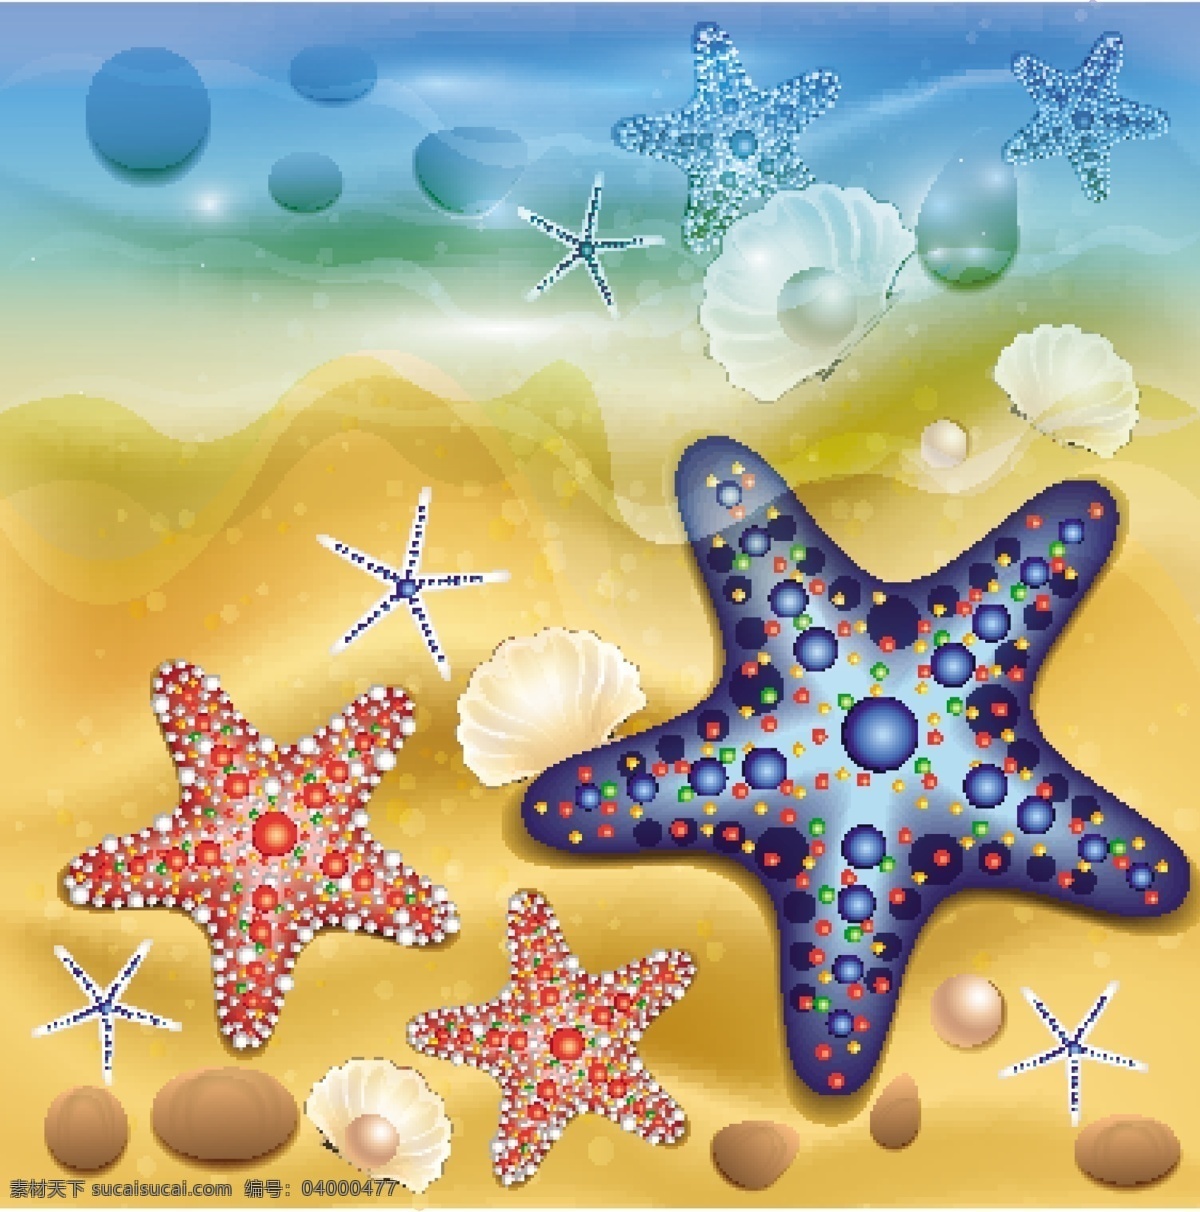 海螺 贝壳 海星 矢量素材 海洋生物 矢量 生物世界